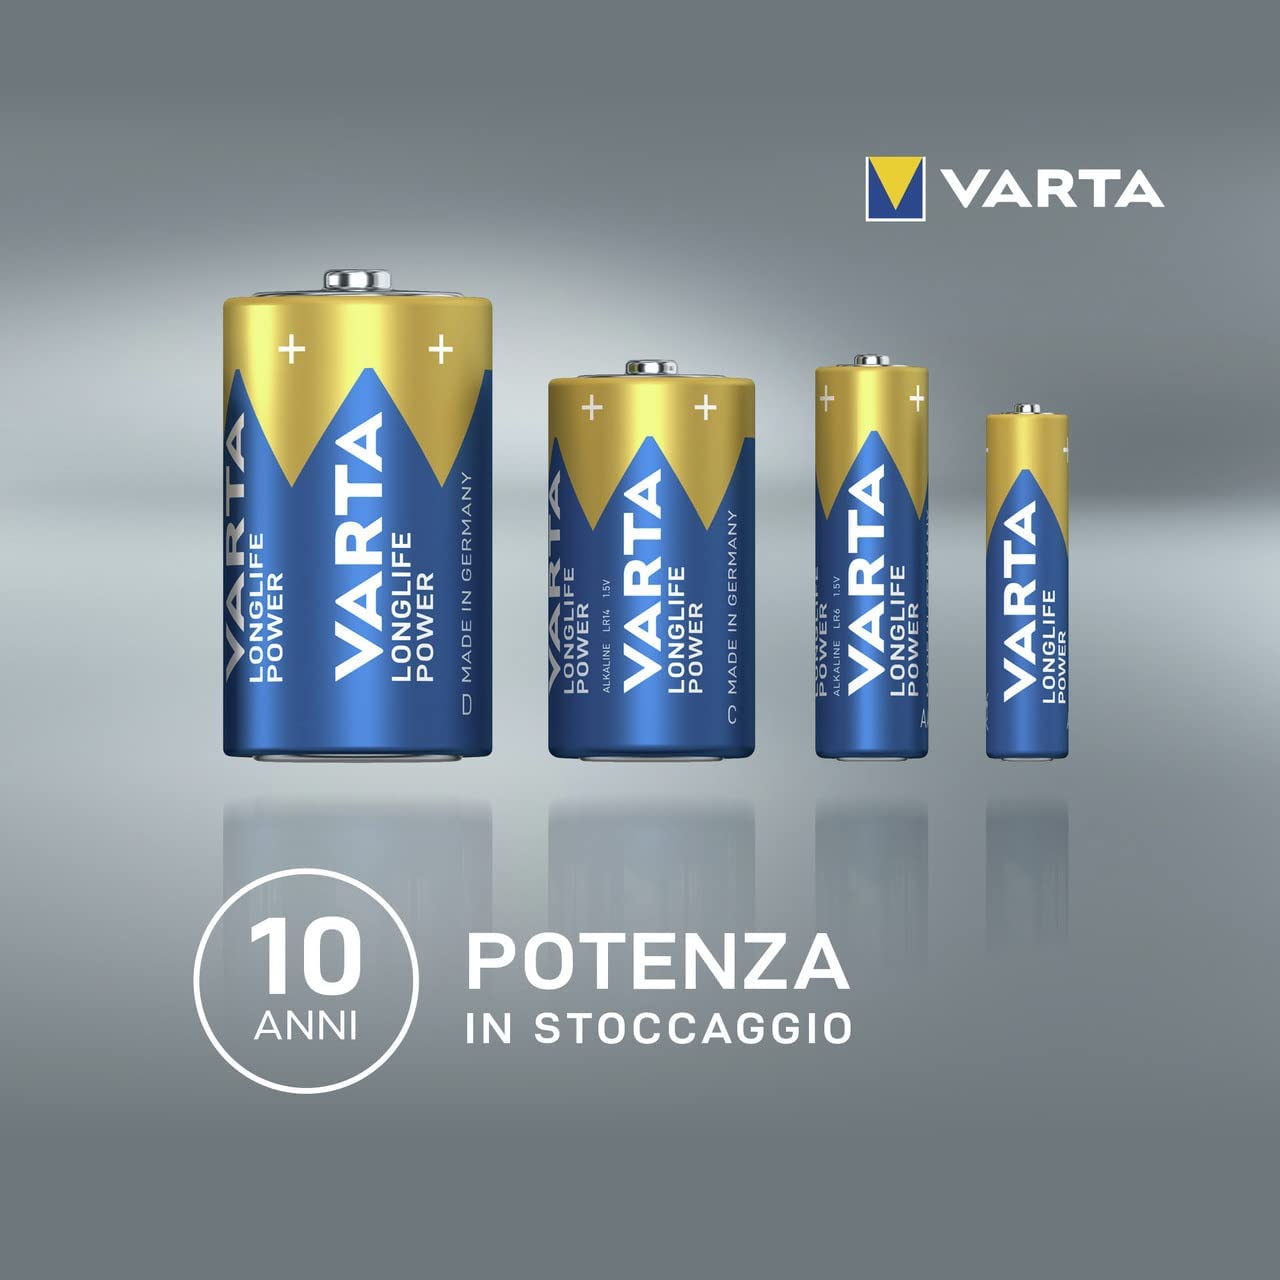 Batteria 9V alkaline VARTA LONGLIFE POWER 4922 Transistor 6LP3146 - Cod.  4922 - 6LP3146 - ToolShop Italia